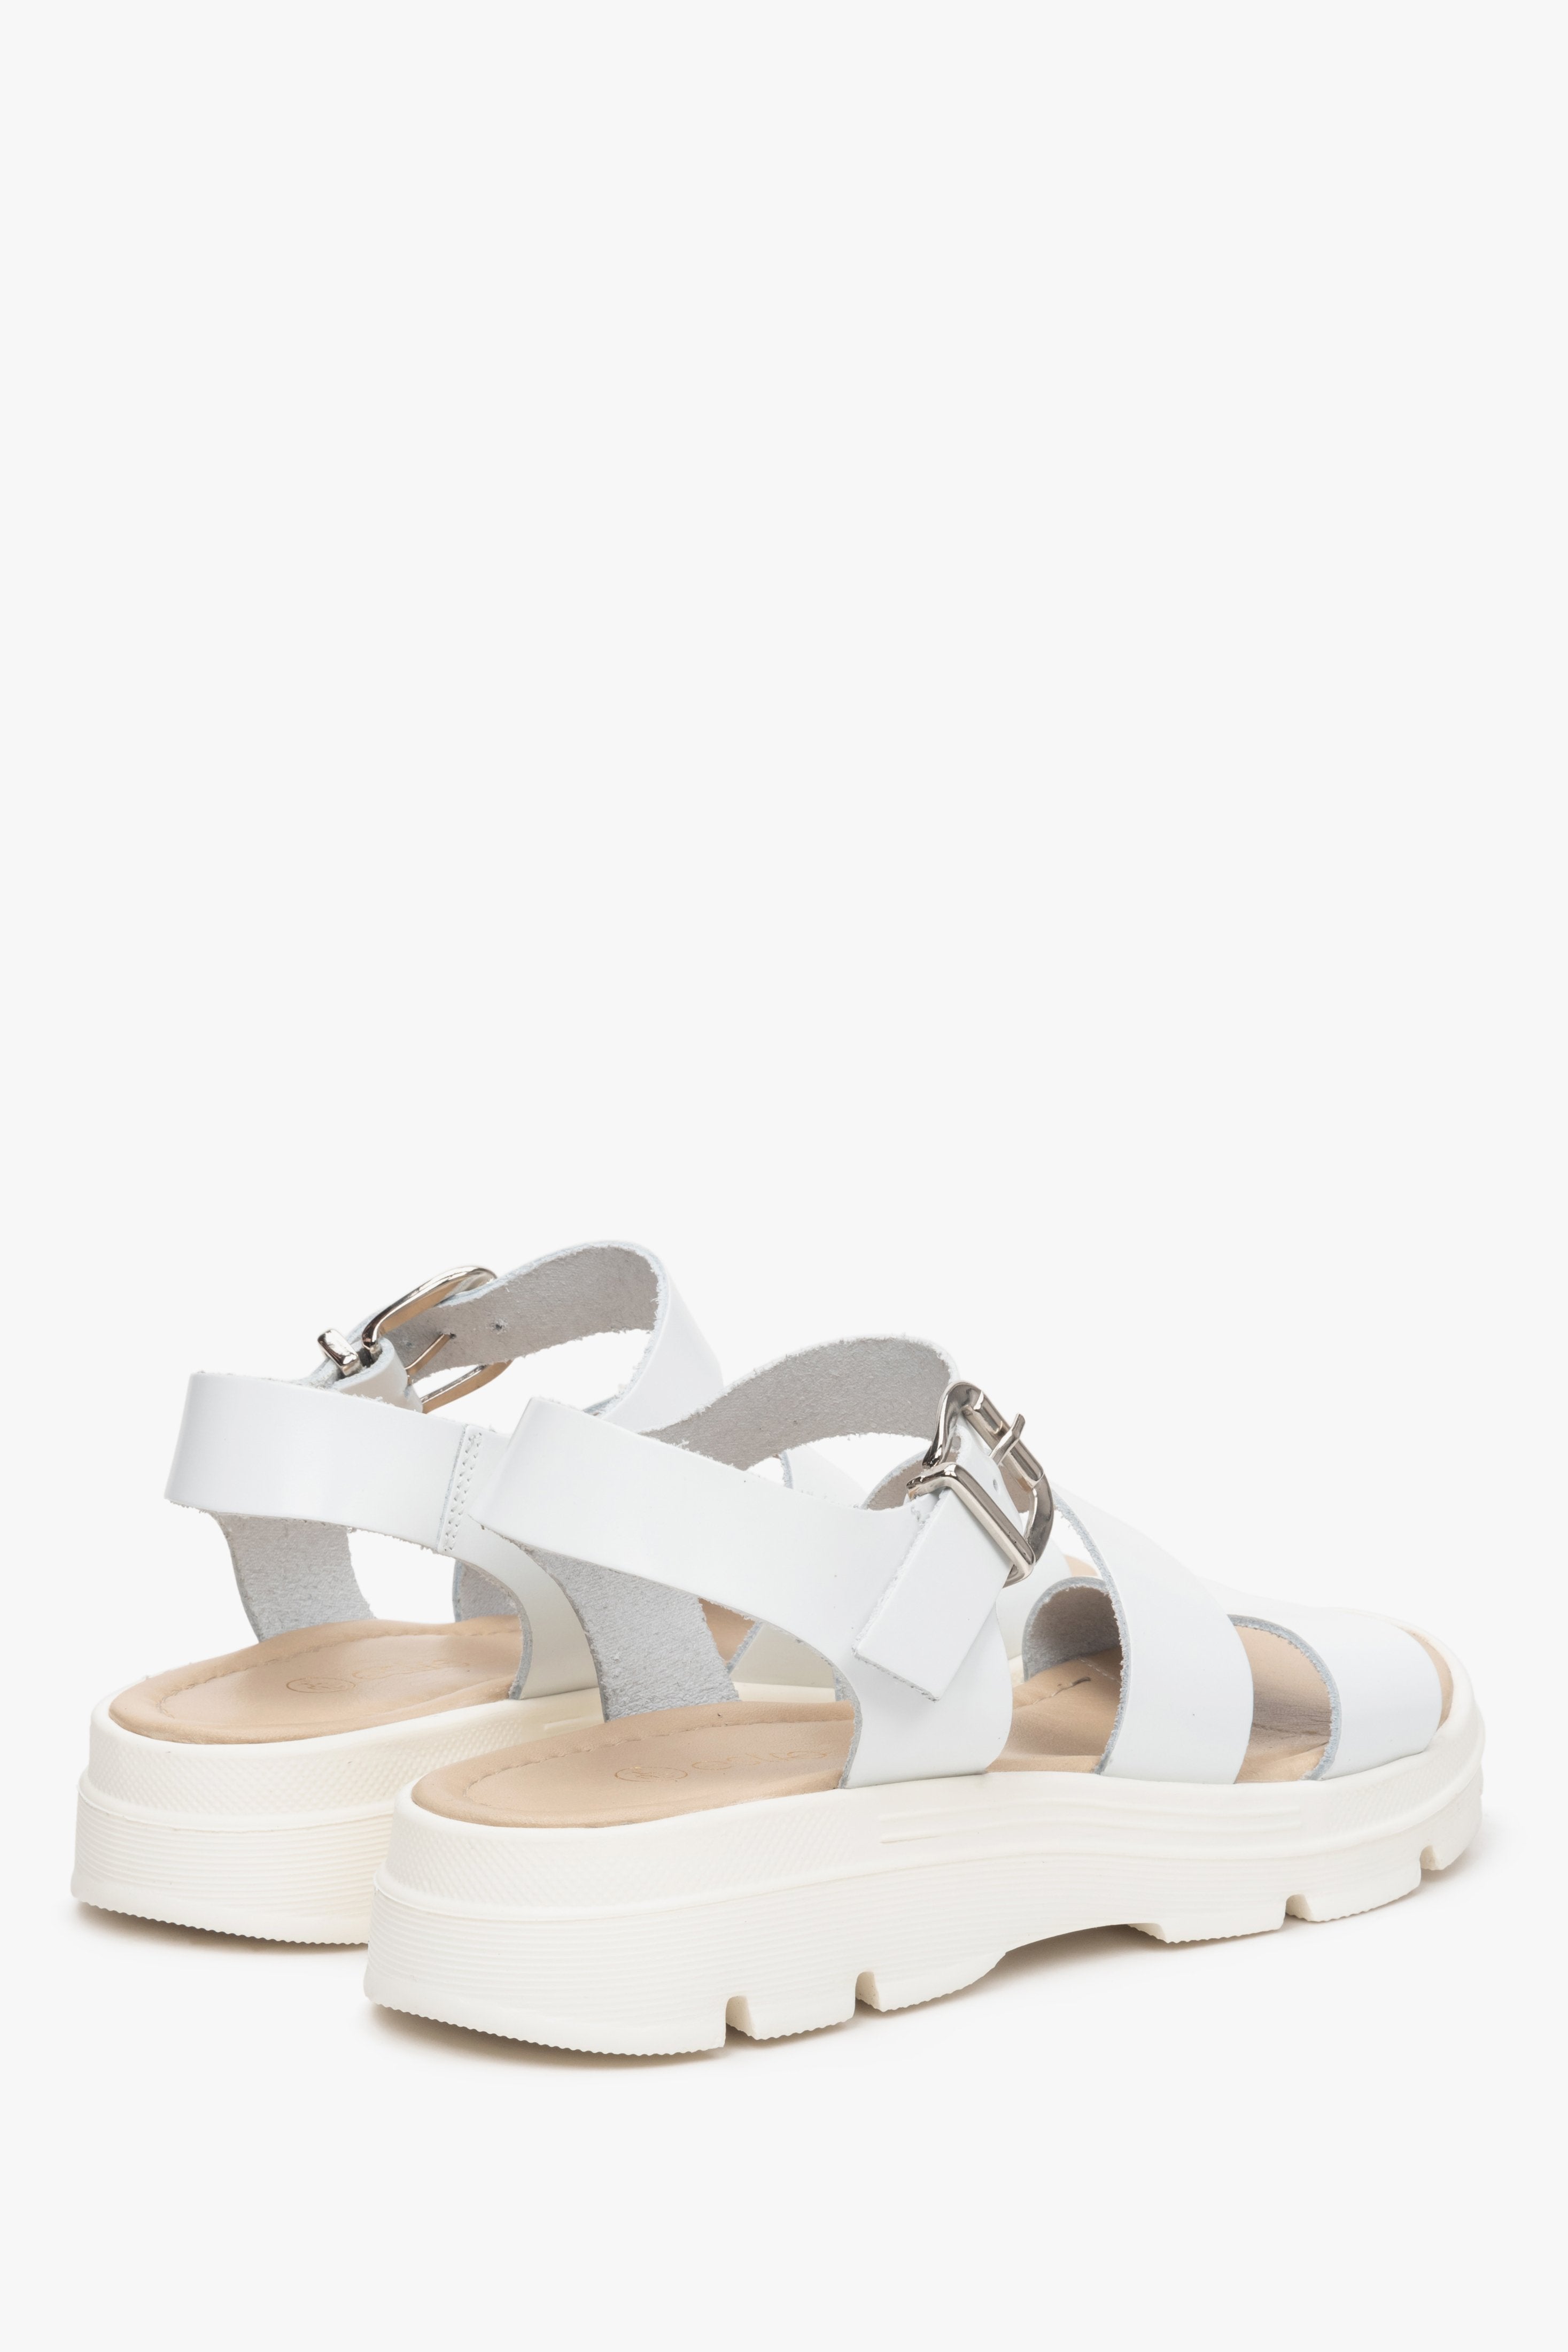 Sandały damskie z włoskiej skóry naturalnej w kolorze białym Estro - zbliżenie na tylną część butów.